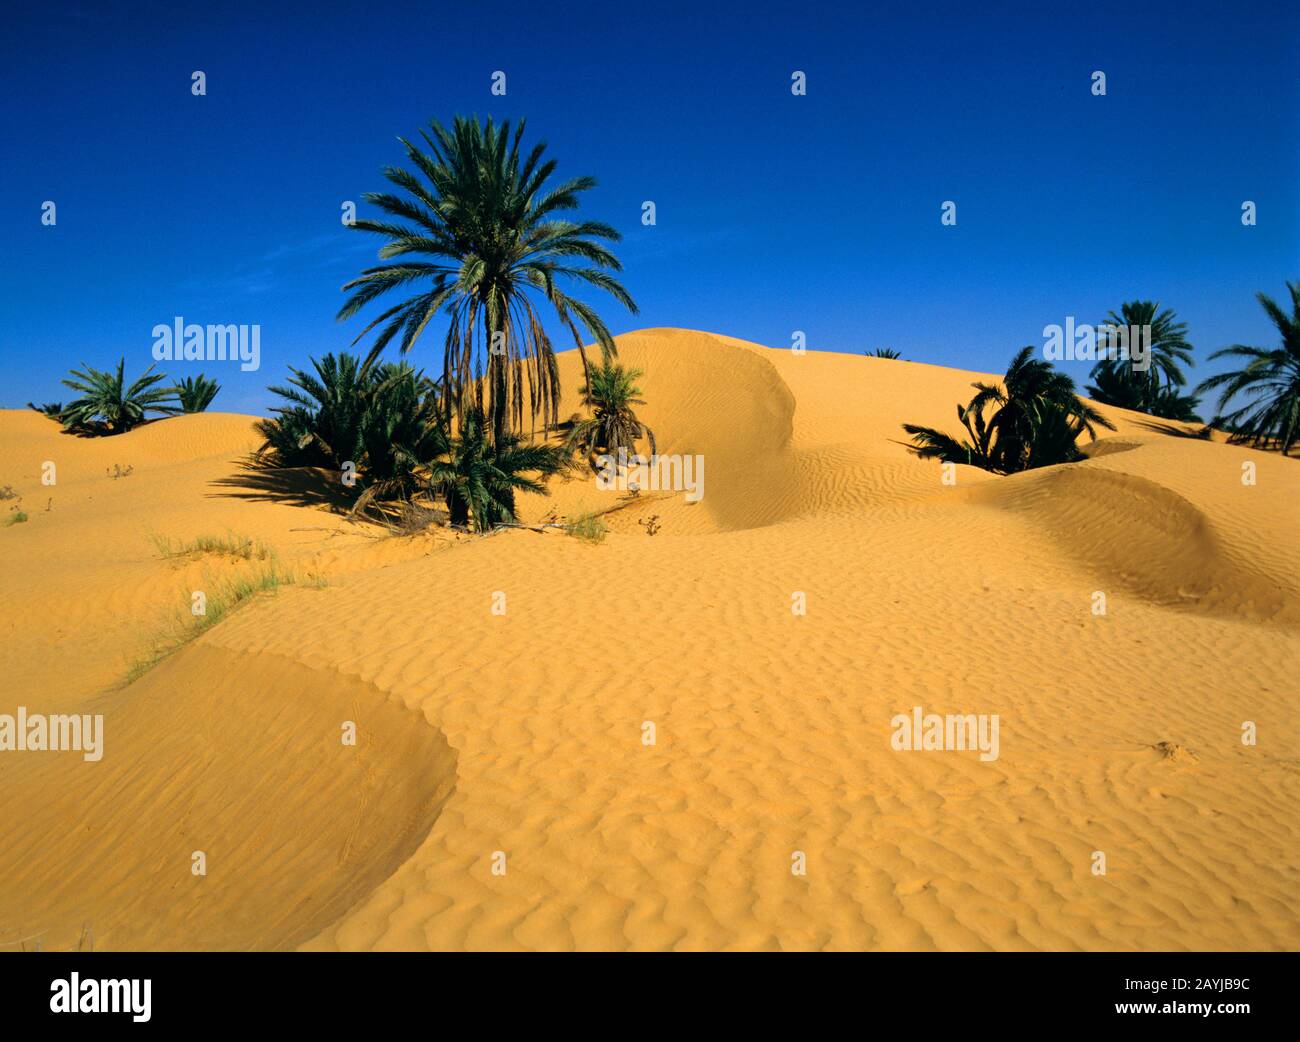 date palm (Phoenix dactylifera), oasis with date palms, Tunisia Stock Photo